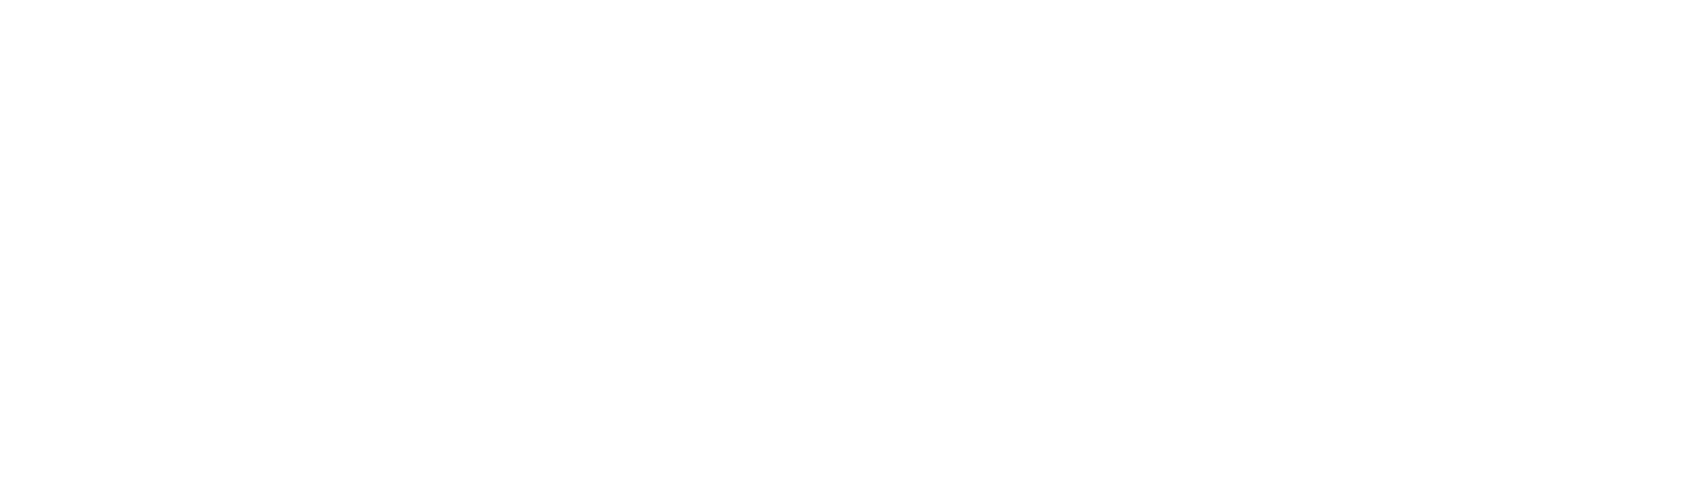 Logo SBCS